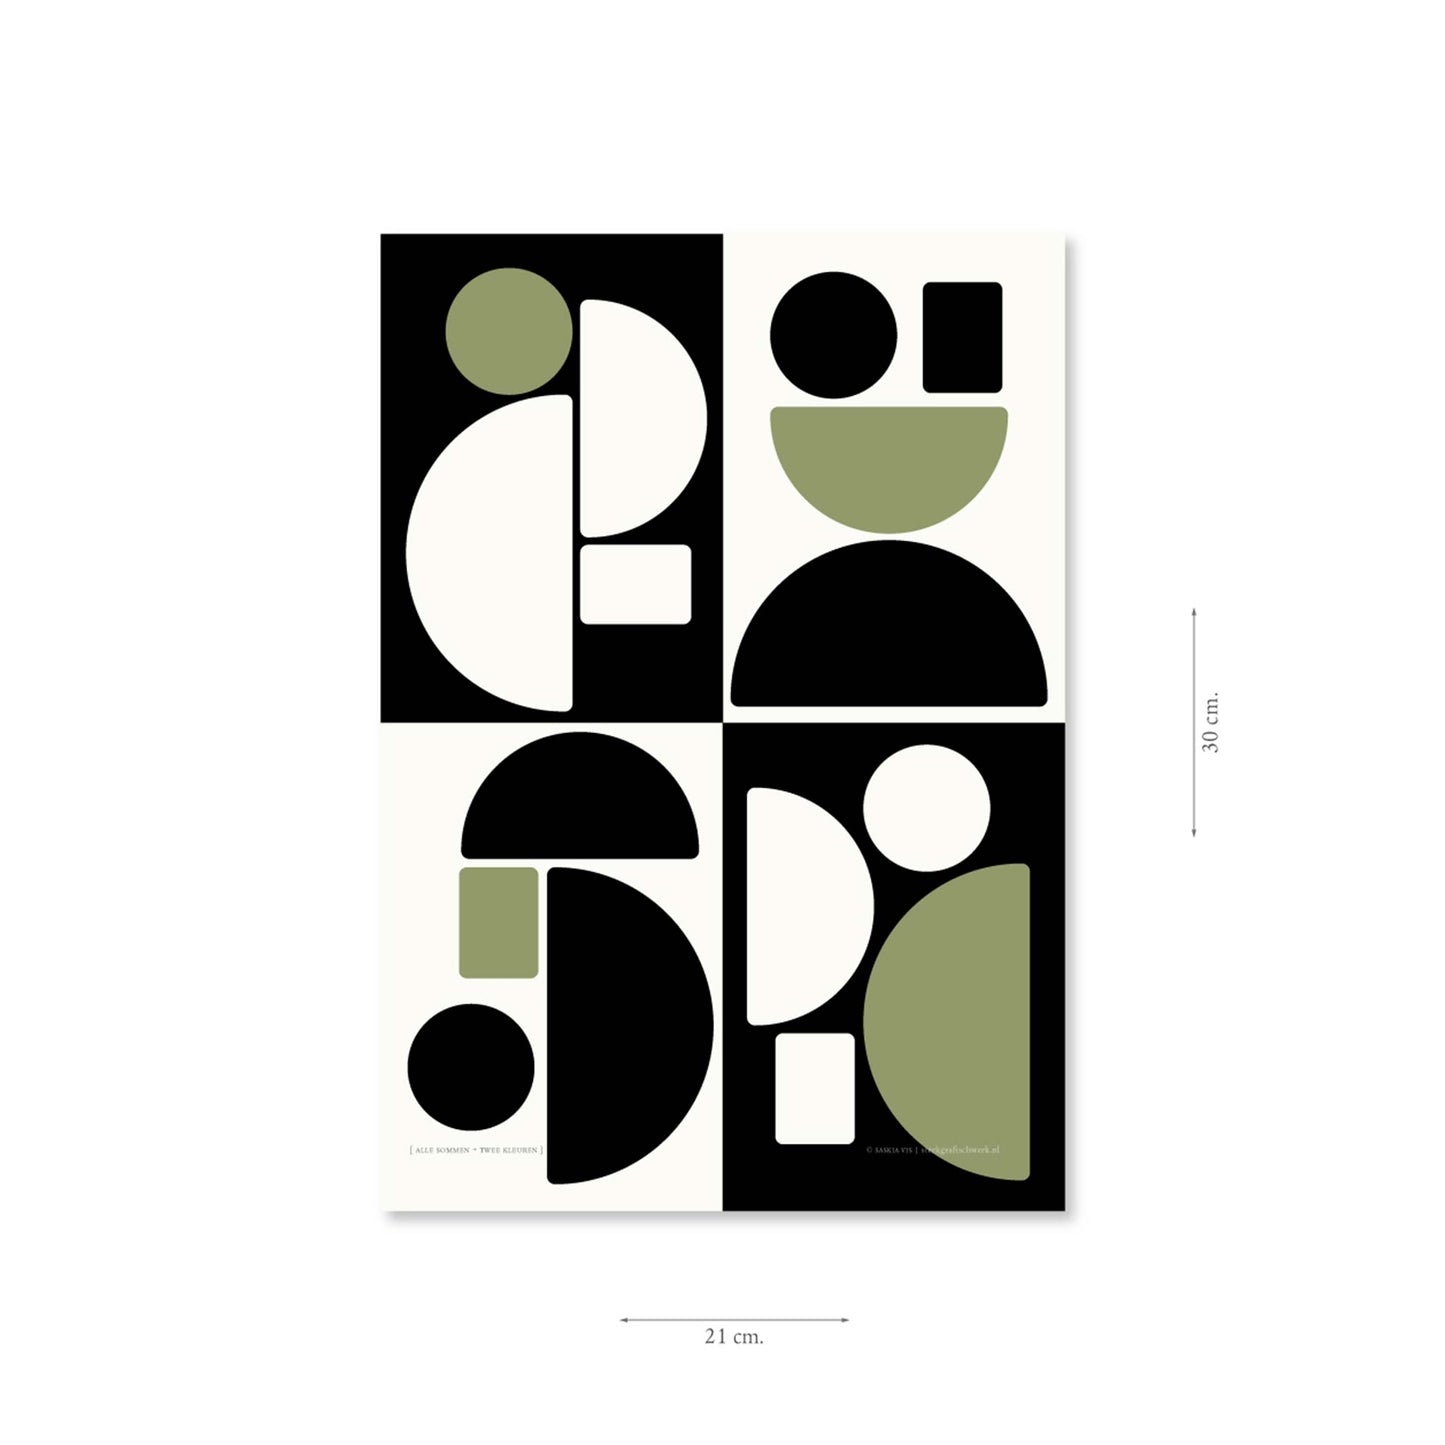 Productafbeelding, poster "alle sommen + twee kleuren", met aanduiding van het formaat erop weergegeven 21 x 30 cm